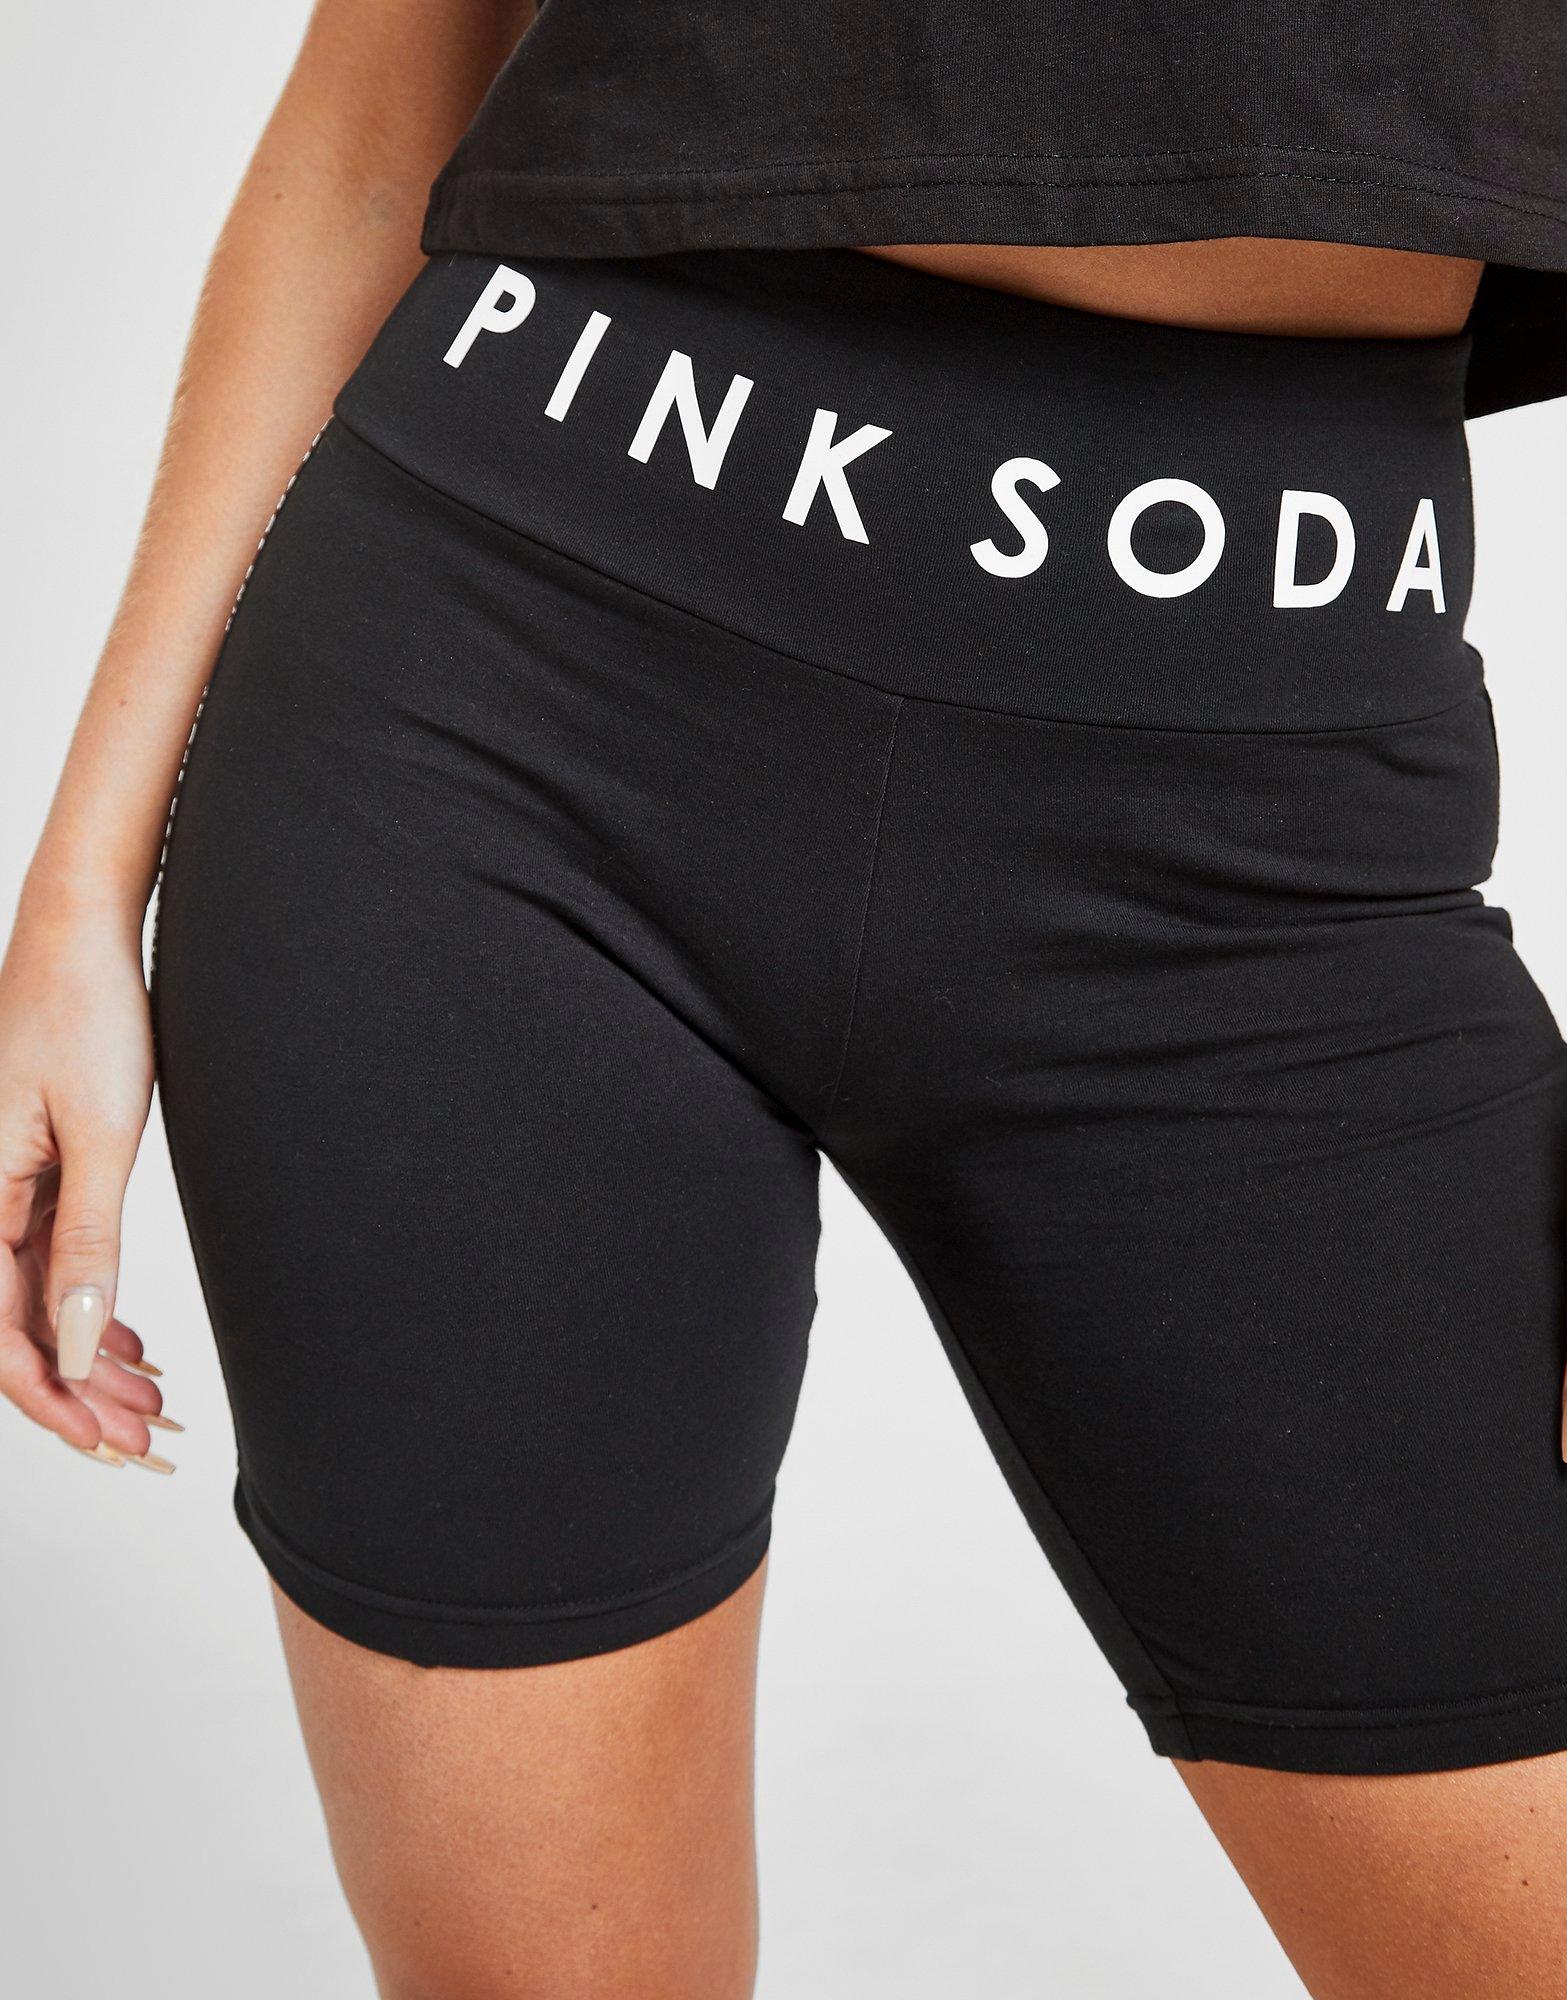 pink soda cycling shorts